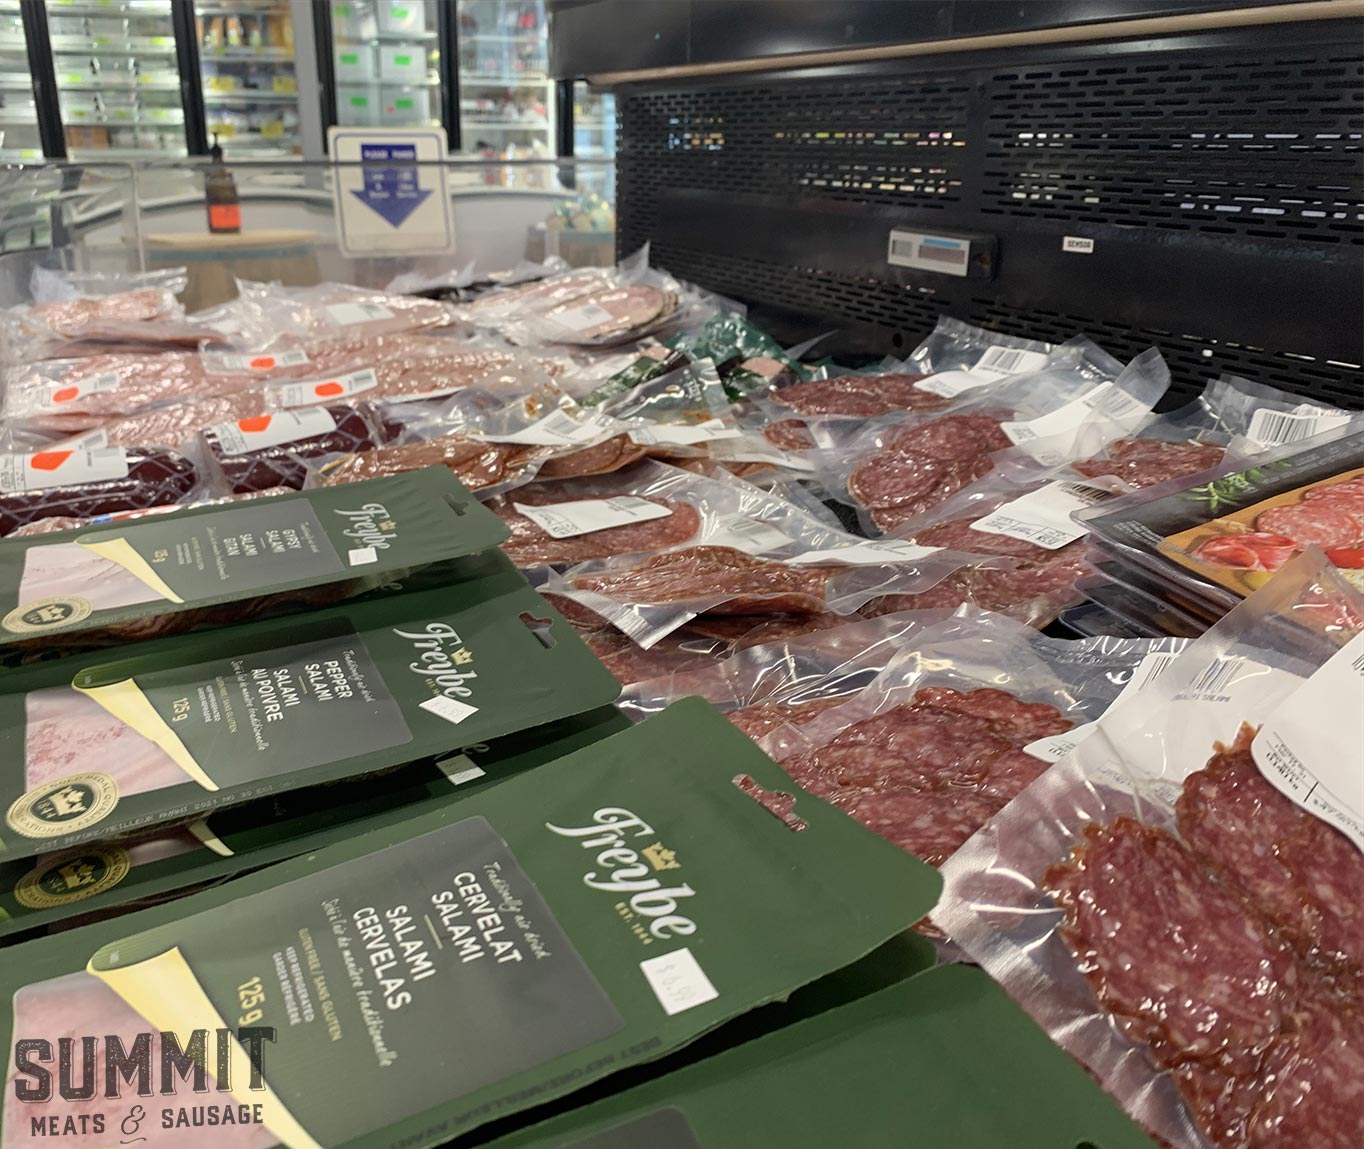 Deli Meats & Wieners from Summit Meats